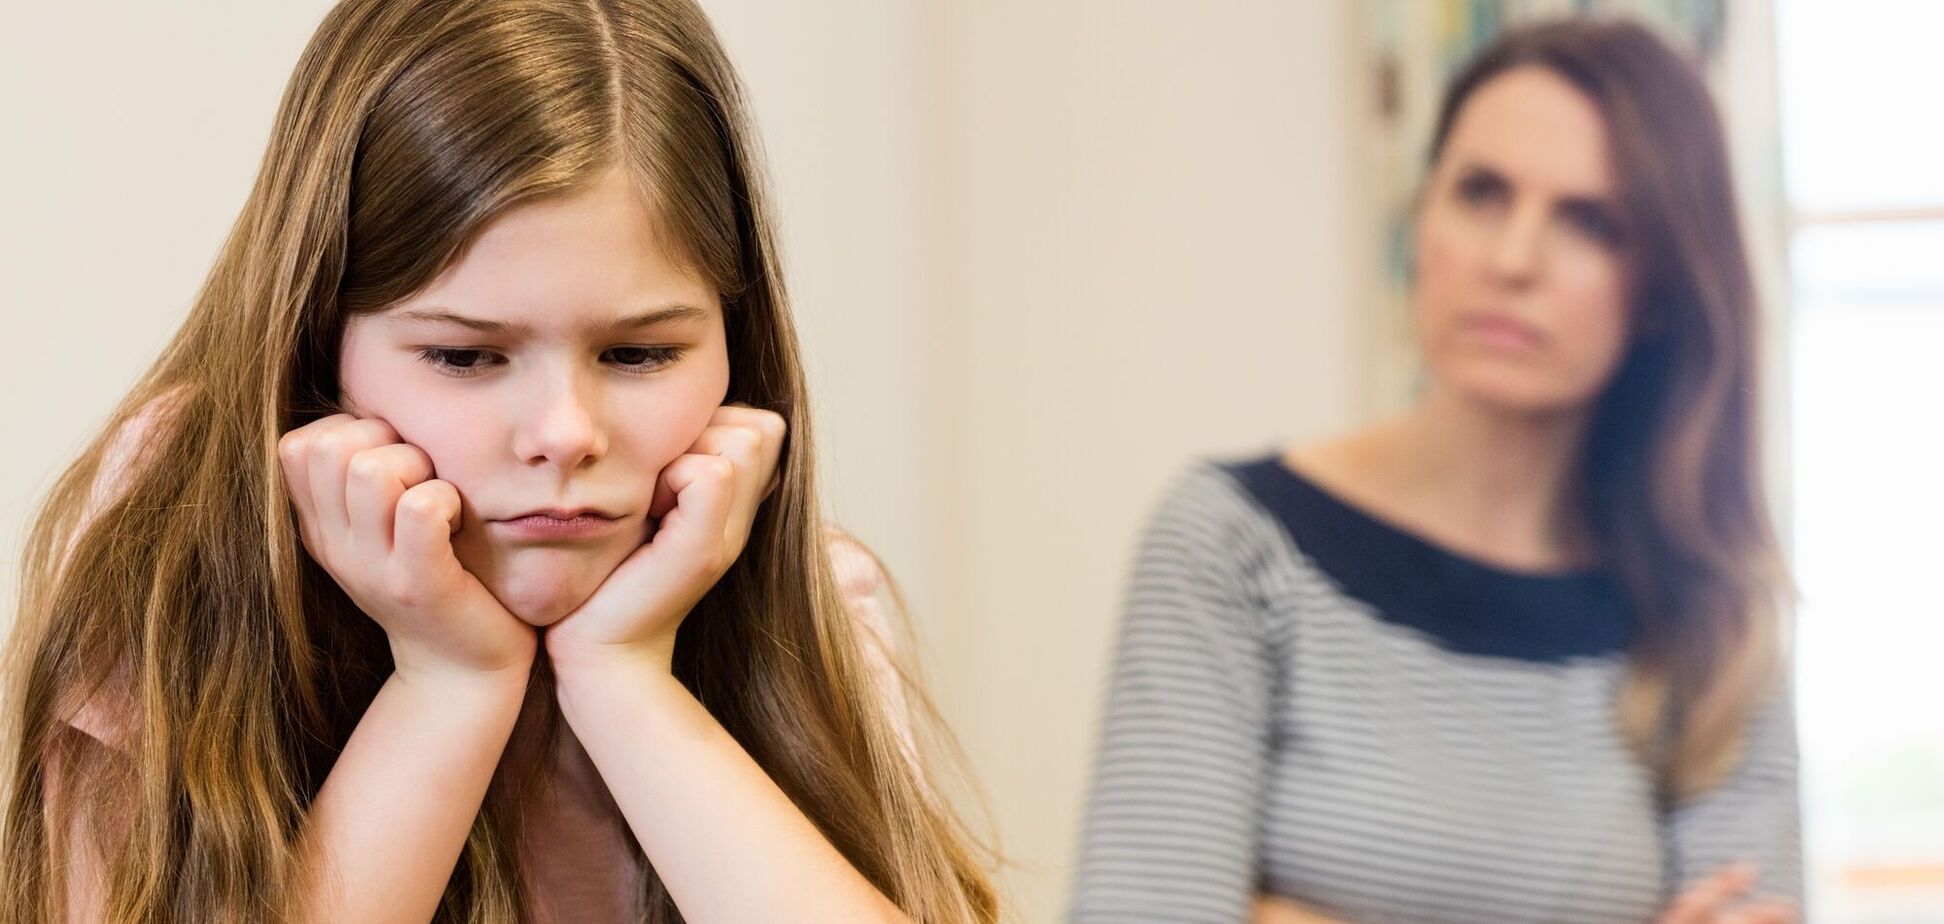 9 способів покарати дитину, які не зашкодять її самооцінці